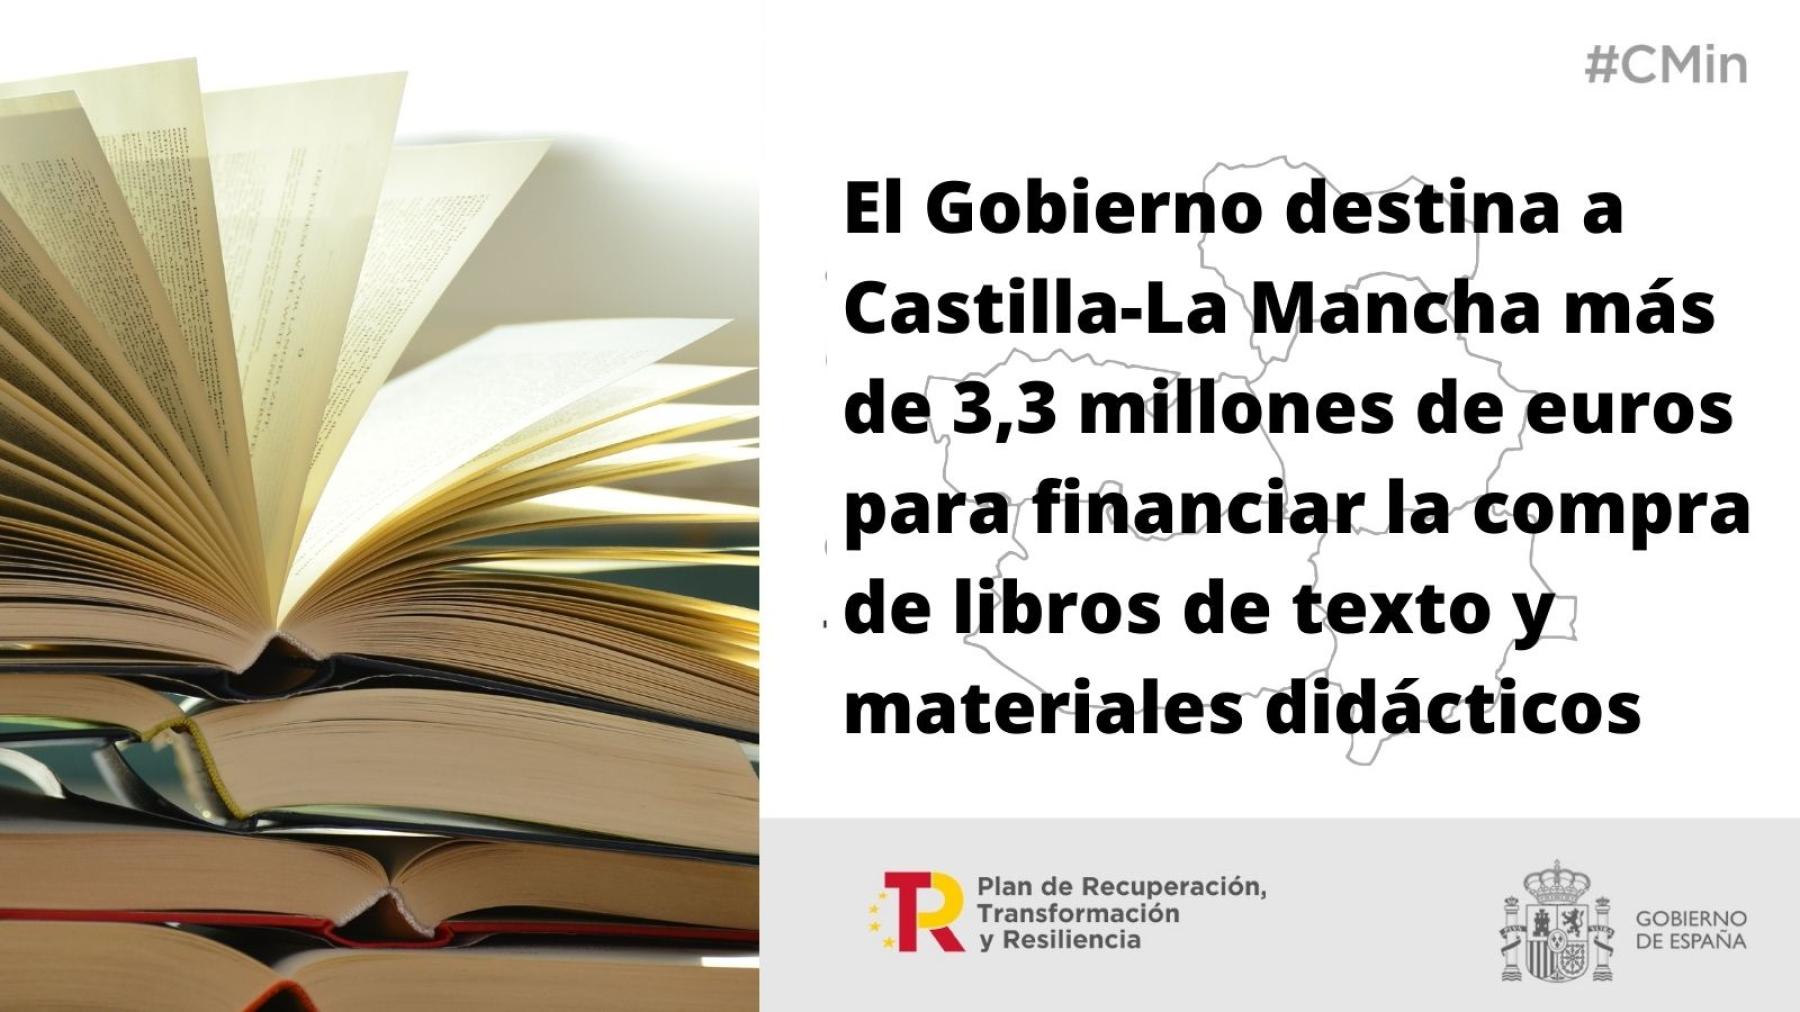 El Gobierno destina a Castilla-La Mancha más de 3,3 millones de euros para financiar la compra de libros de texto y materiales didácticos